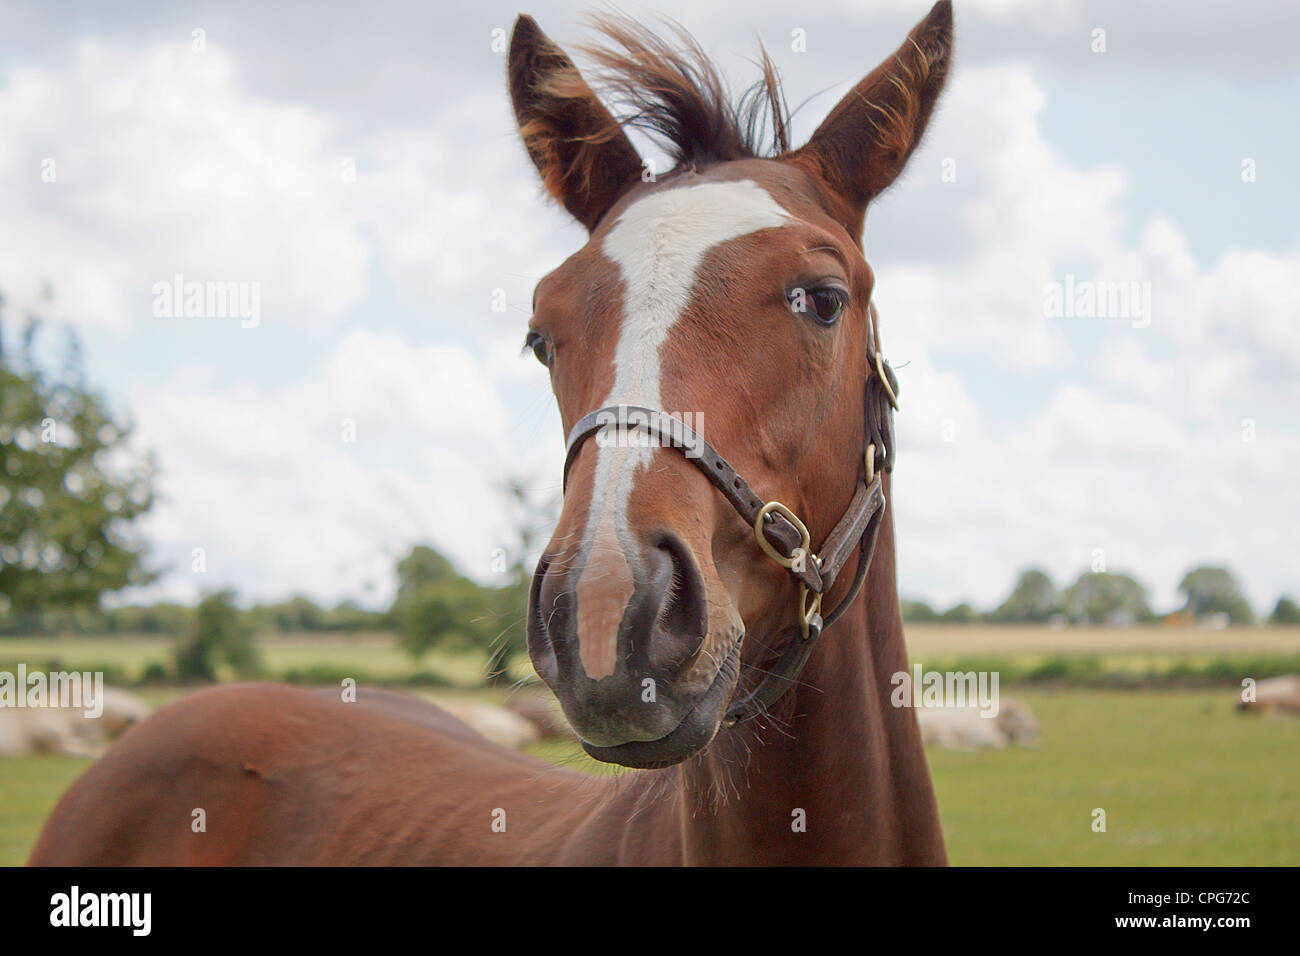 Cheval de race close-up portrait (Equus ferus caballus) Banque D'Images